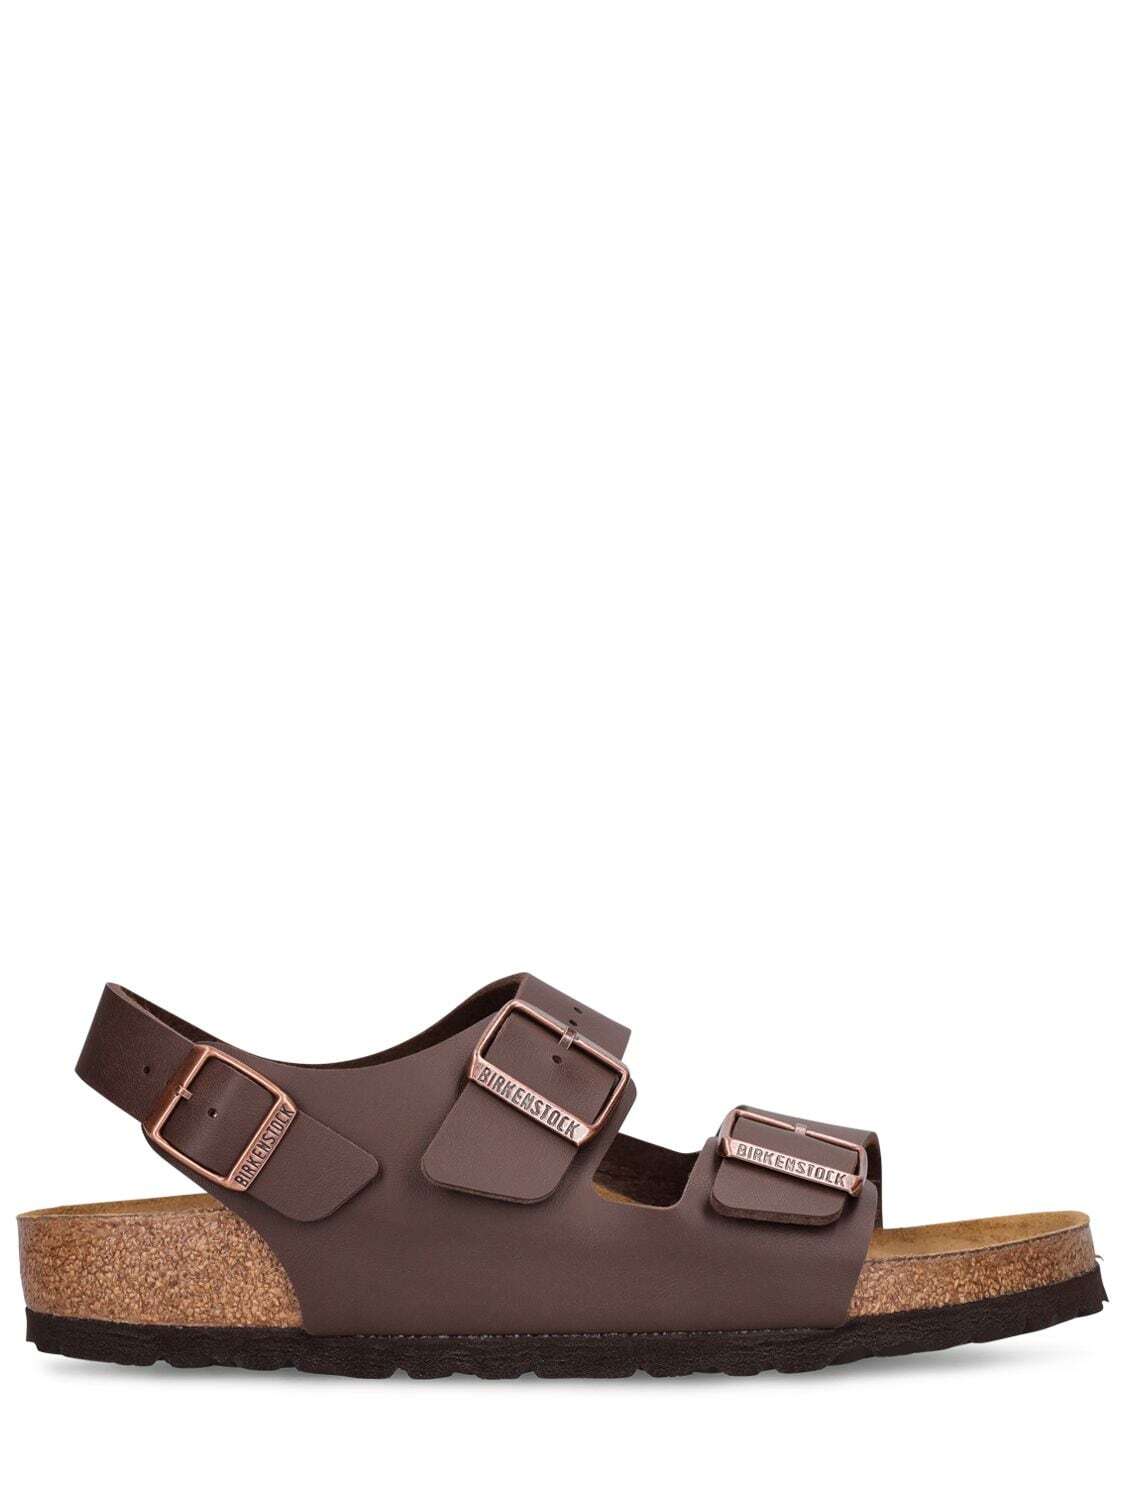 BIRKENSTOCK Milano Birkoflor Sandals in brown